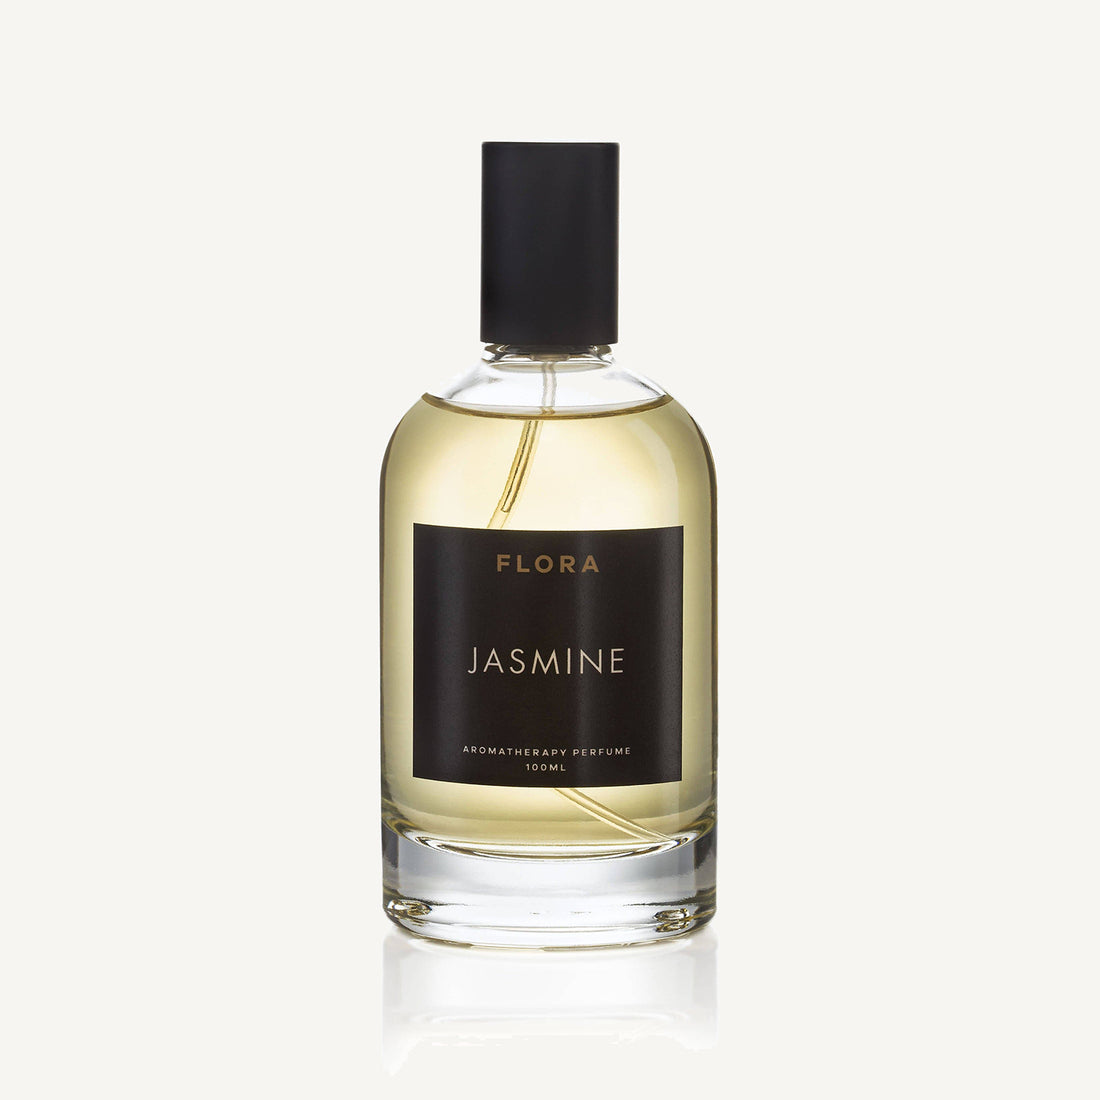 JASMINE Aromatherapy Perfume